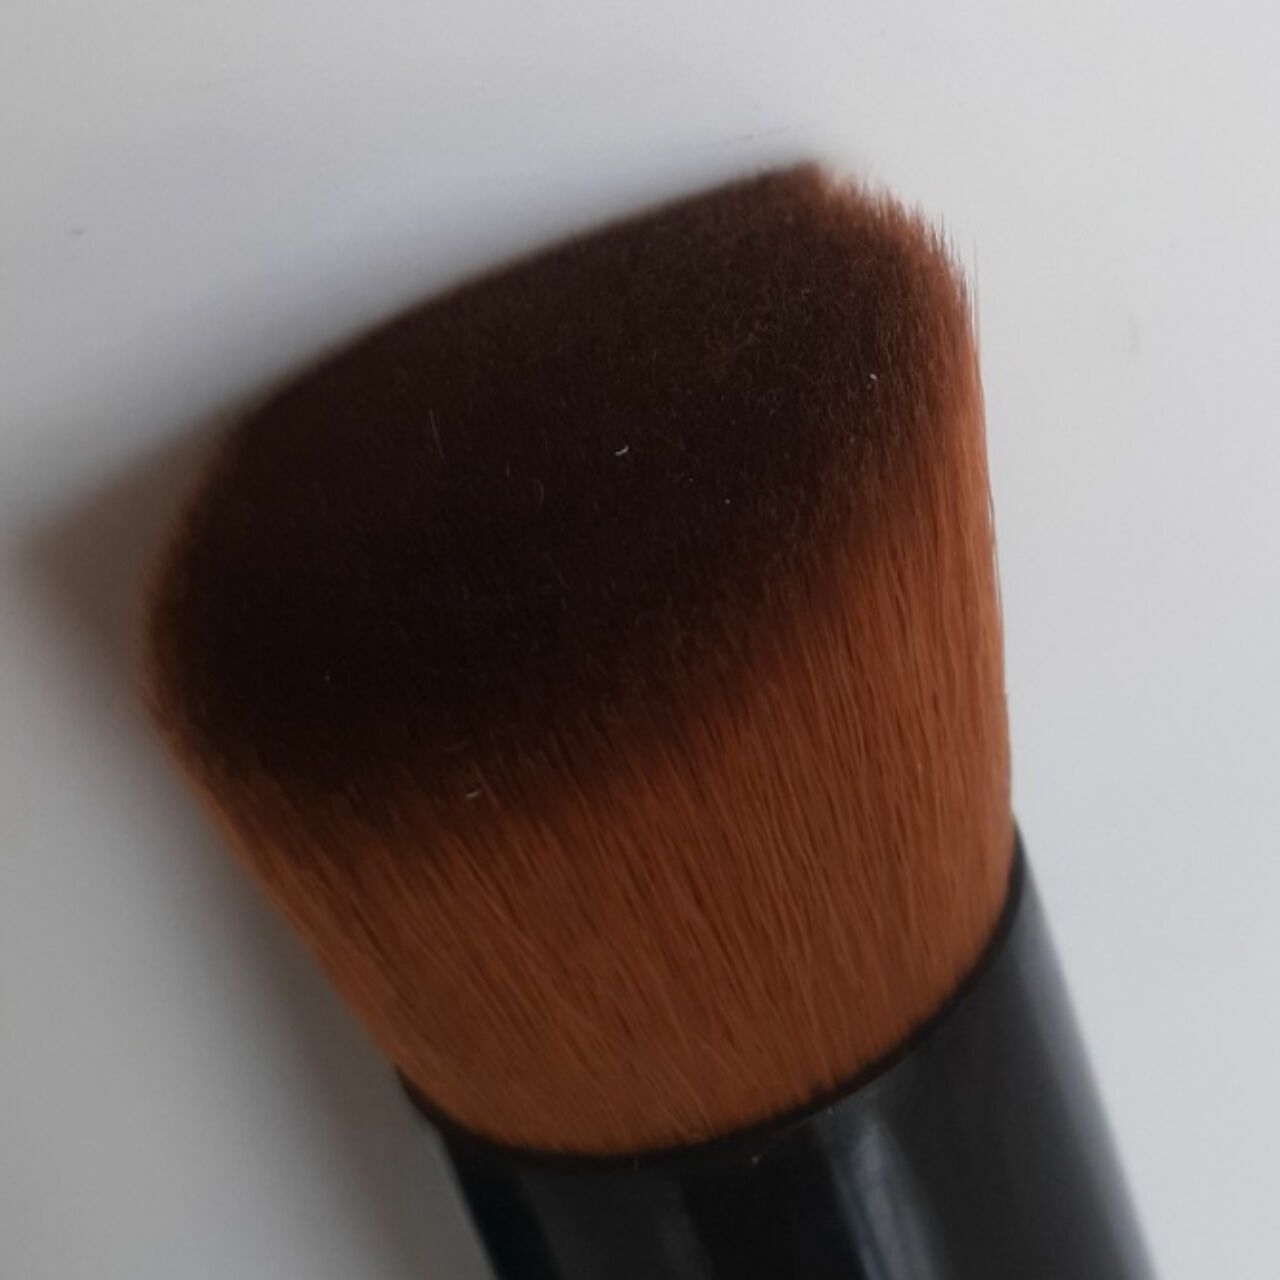 Chanel Fluid / Powder Foundation Brush